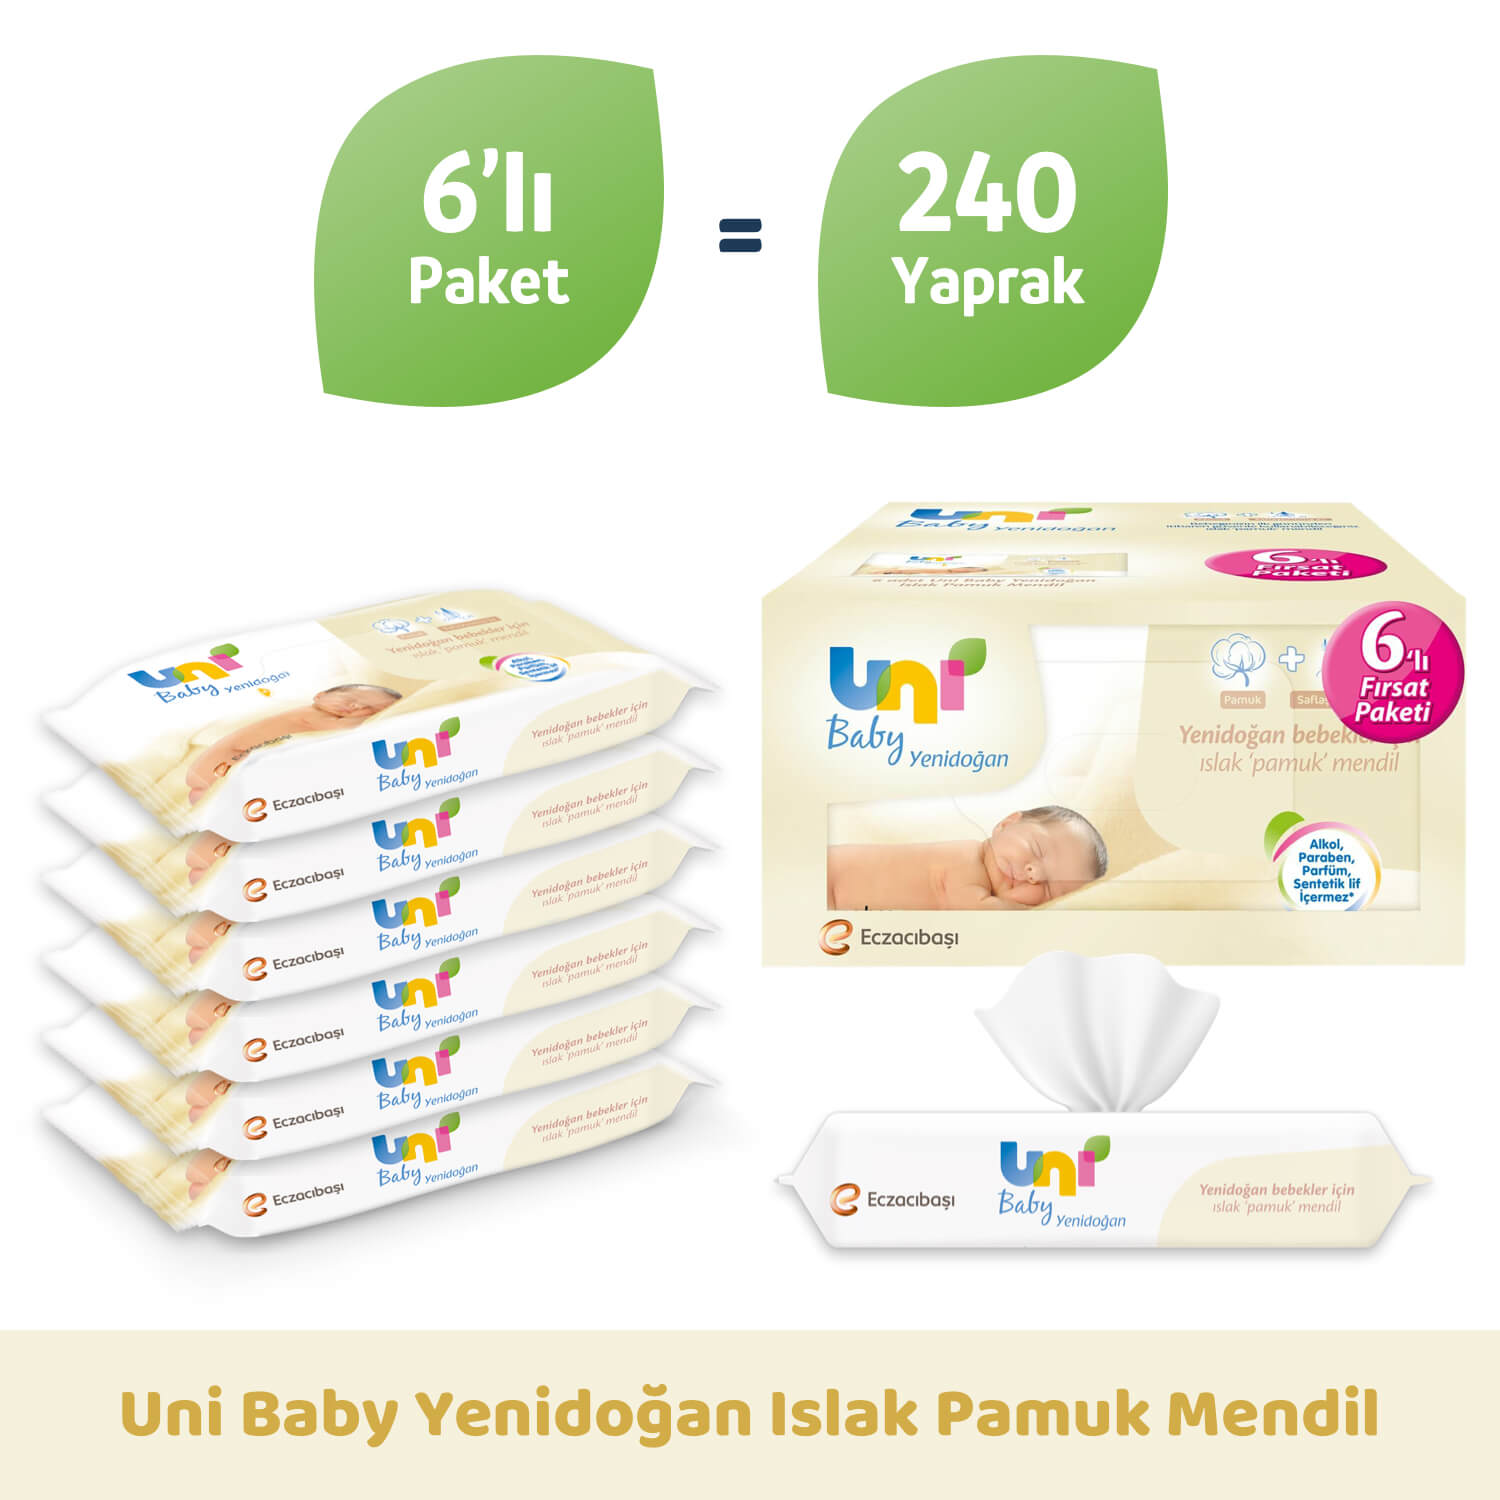 Uni Baby Yenidoğan Islak Pamuk Mendil 6'lı Fırsat Paketi 240'lı